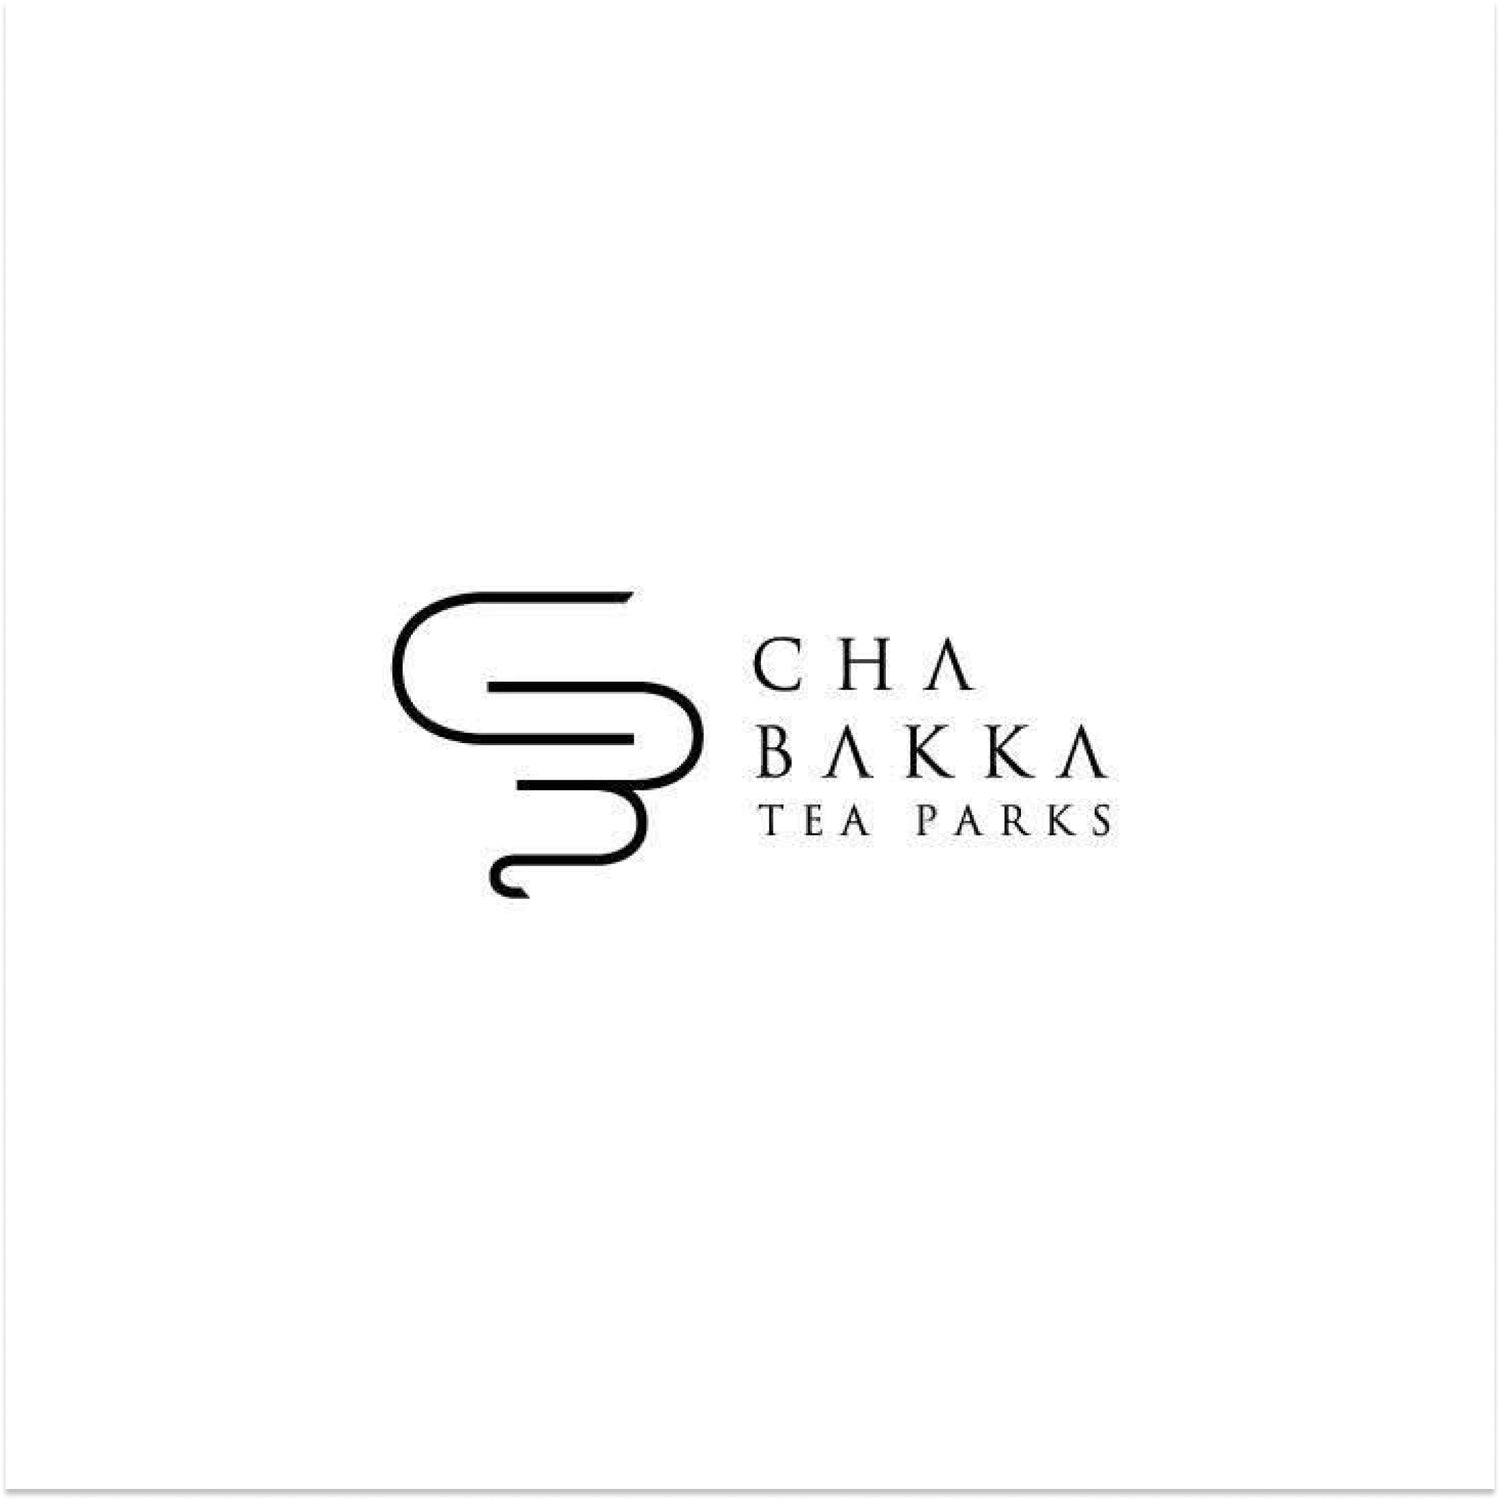 CHABAKKA TEA PARKS